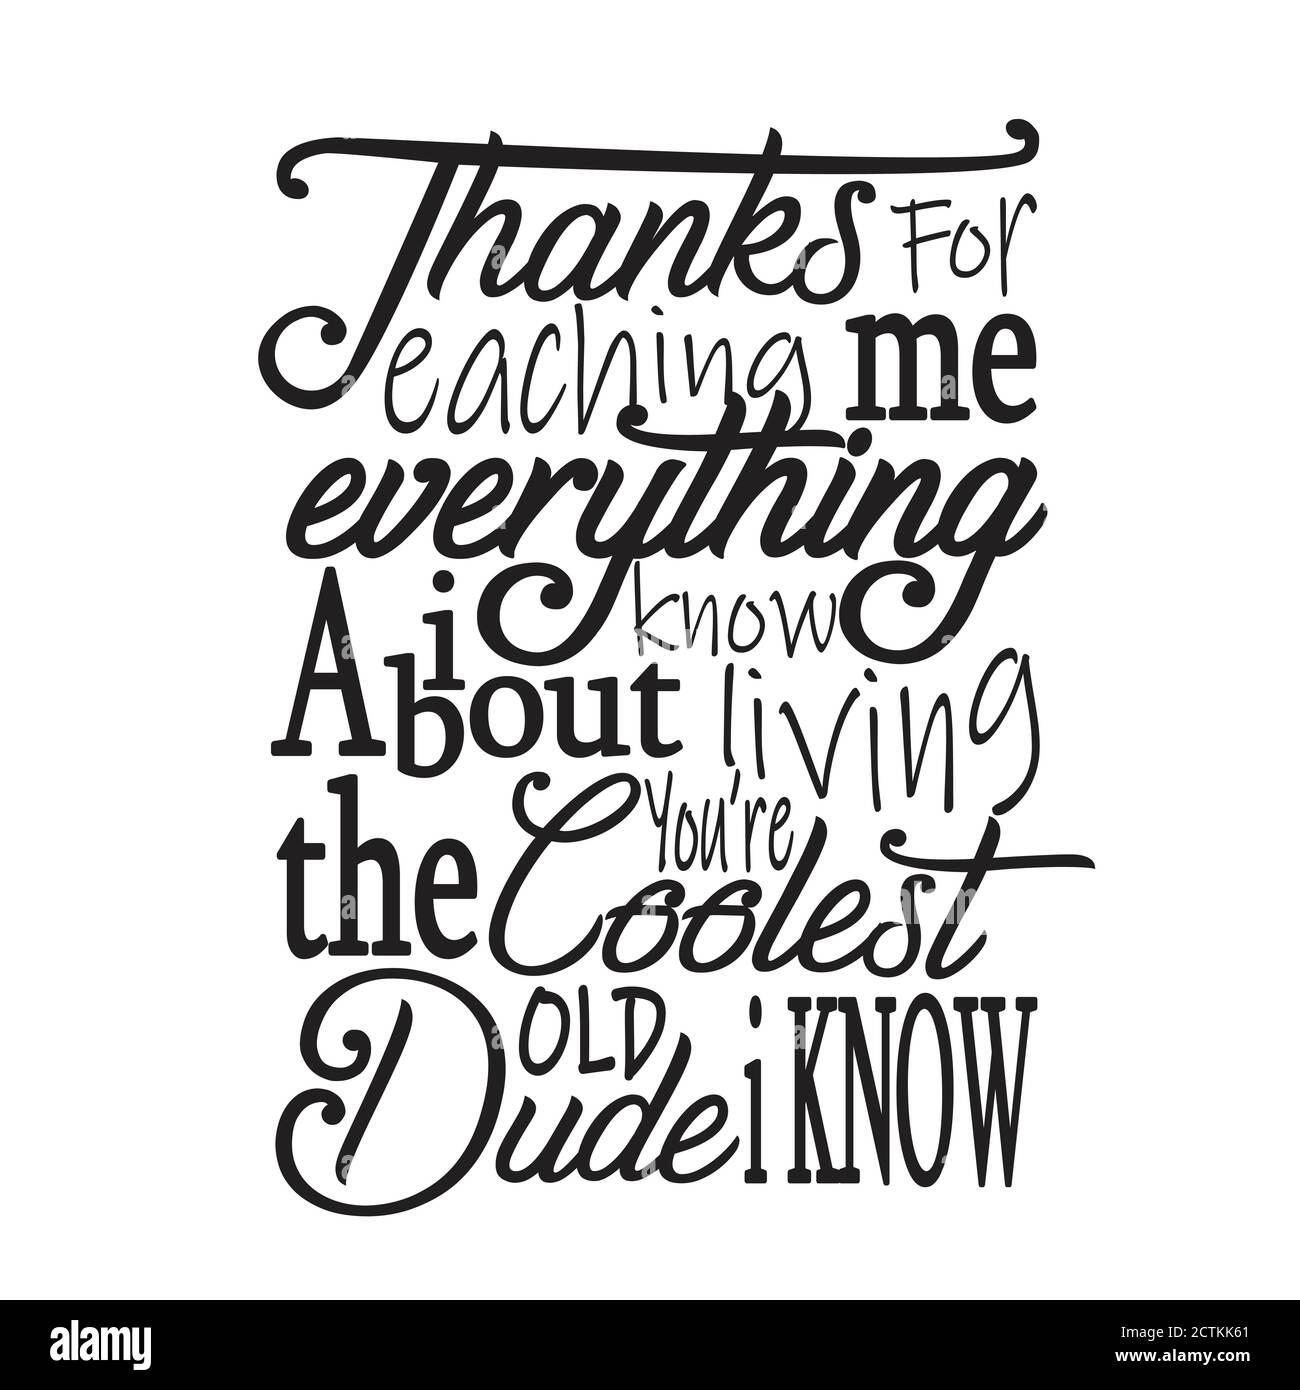 Padre Day Quotes e Slogan buono per T-Shirt. Grazie Per L'Insegnamento Di Me Tutto Quello Che So Su Vivere Voi Re Il Più Cool Dude Vecchio So. Illustrazione Vettoriale